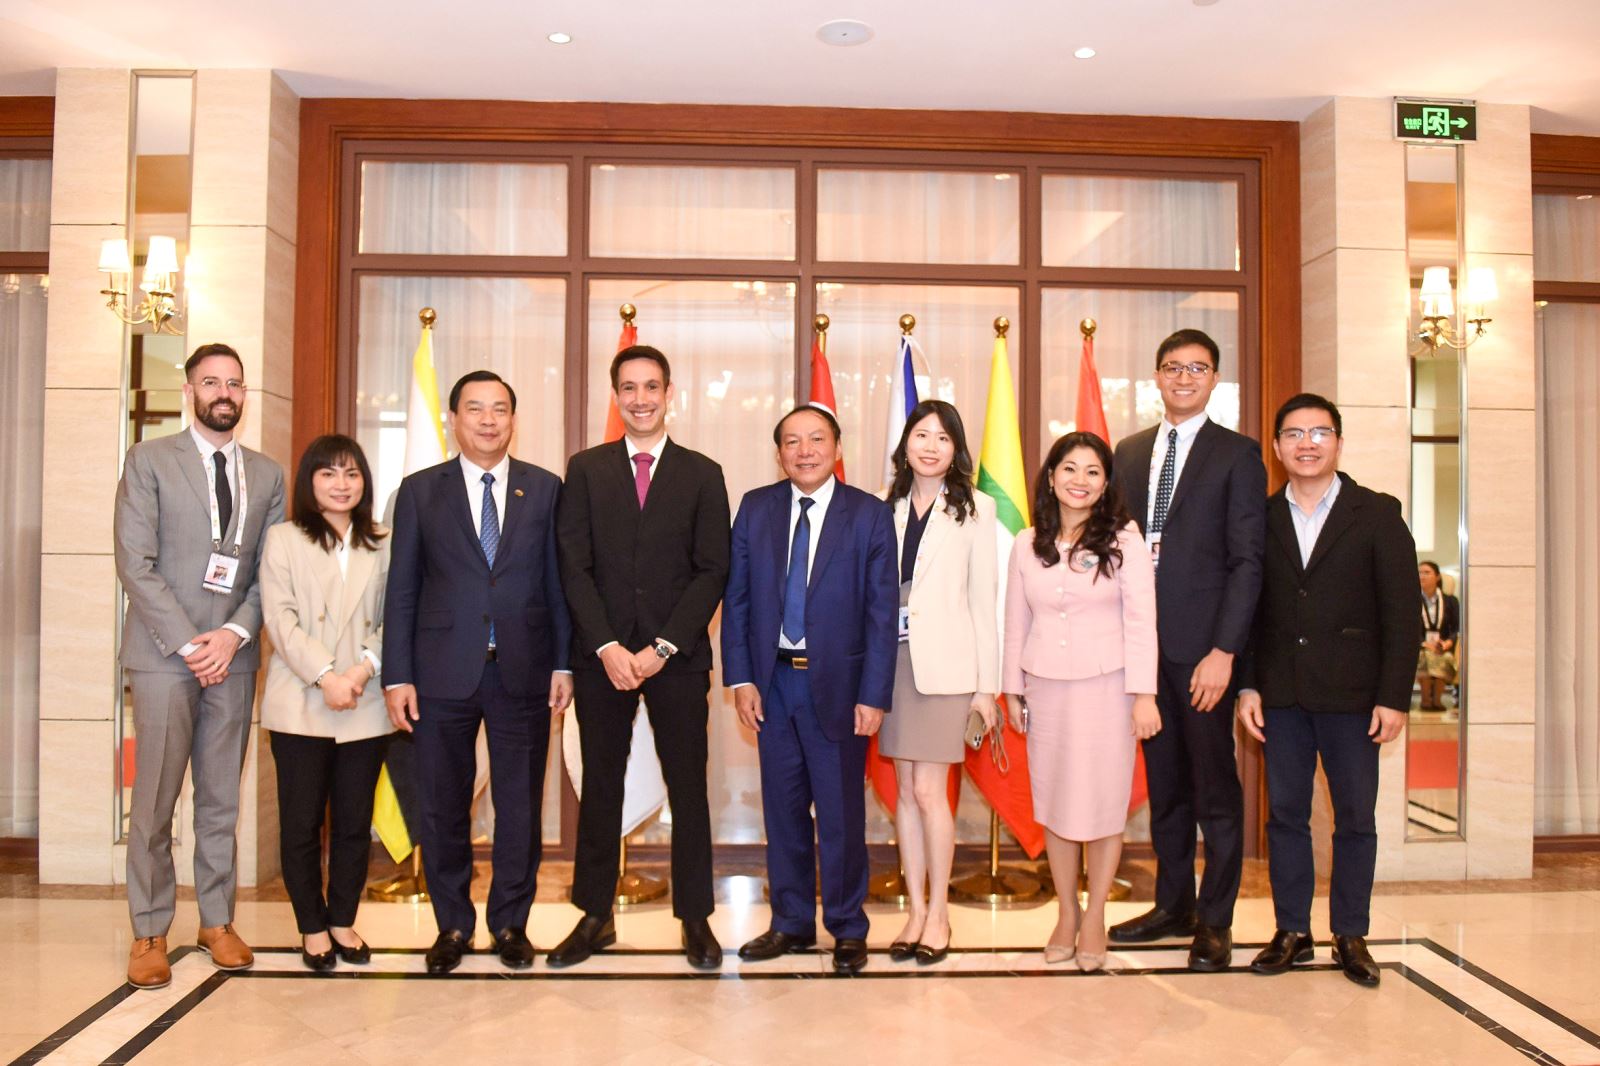 Tiếp nối các hoạt động trong chuyến thăm Lào và tham dự Hội nghị Bộ trưởng Du lịch ASEAN, Bộ trưởng Bộ VHTTDL Nguyễn Văn Hùng đã có cuộc tiếp và làm việc với ông Omri Morgenshtern, Giám đốc điều hành Công ty Agoda trong chiều ngày 24-1, tại thủ đô Viêng Chăn.